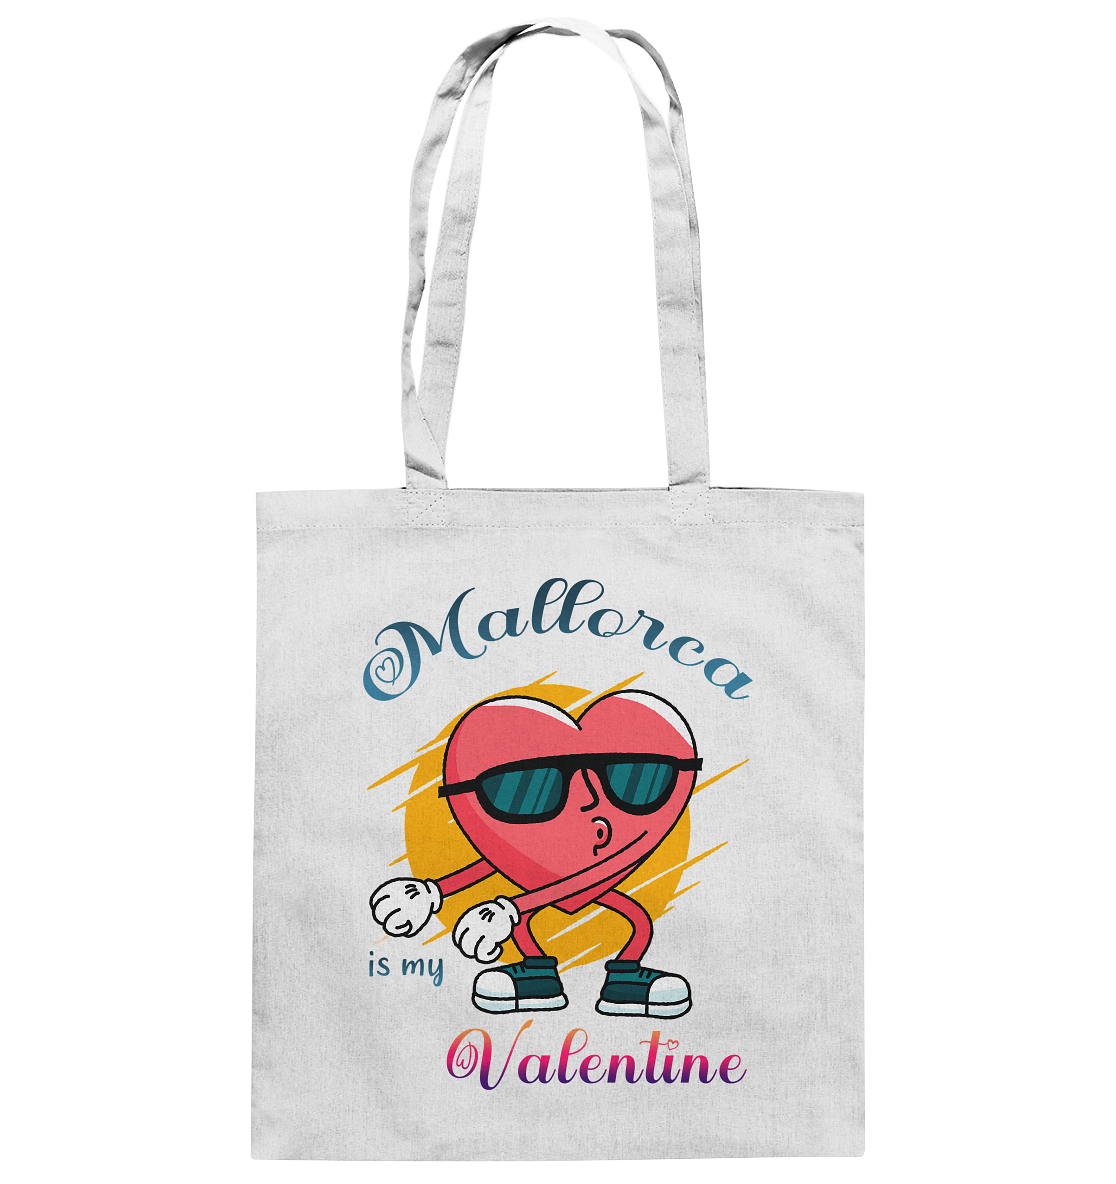 Mallorca is my Valentine • Baumwolltasche